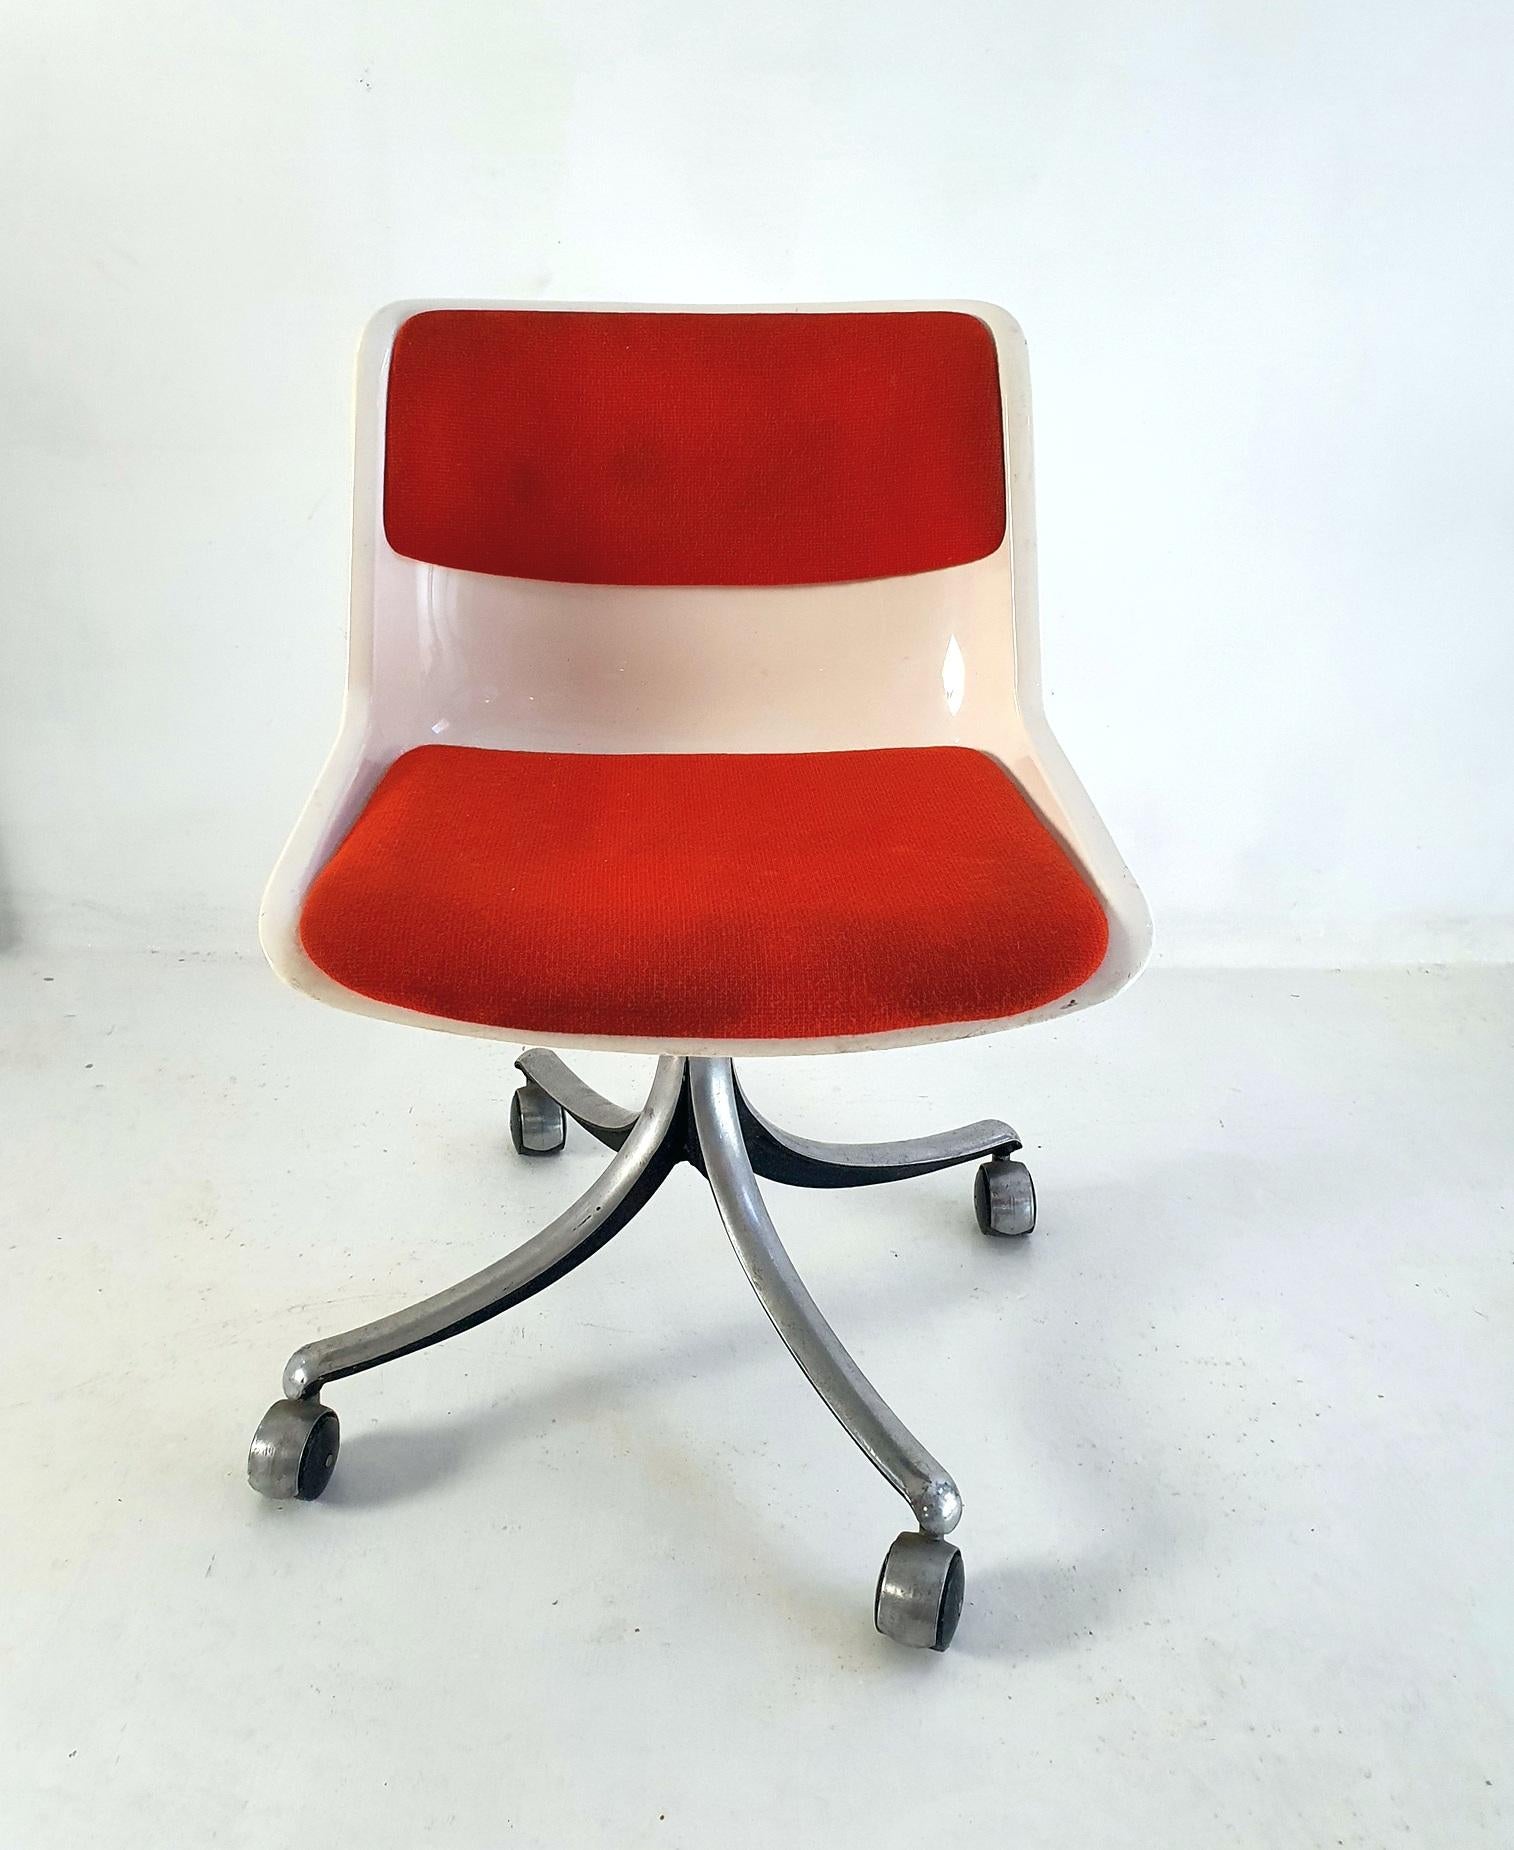 Bürodrehstuhl aus weißem Kunststoff mit orangefarbenem/rotem Wollstoff, der auf einem Aluminiumsockel mit den Originalrollen steht und gut funktioniert. Entworfen von Osvaldo Borsani für Tecno in den 1970er Jahren. Dieses Modell ist in der Höhe